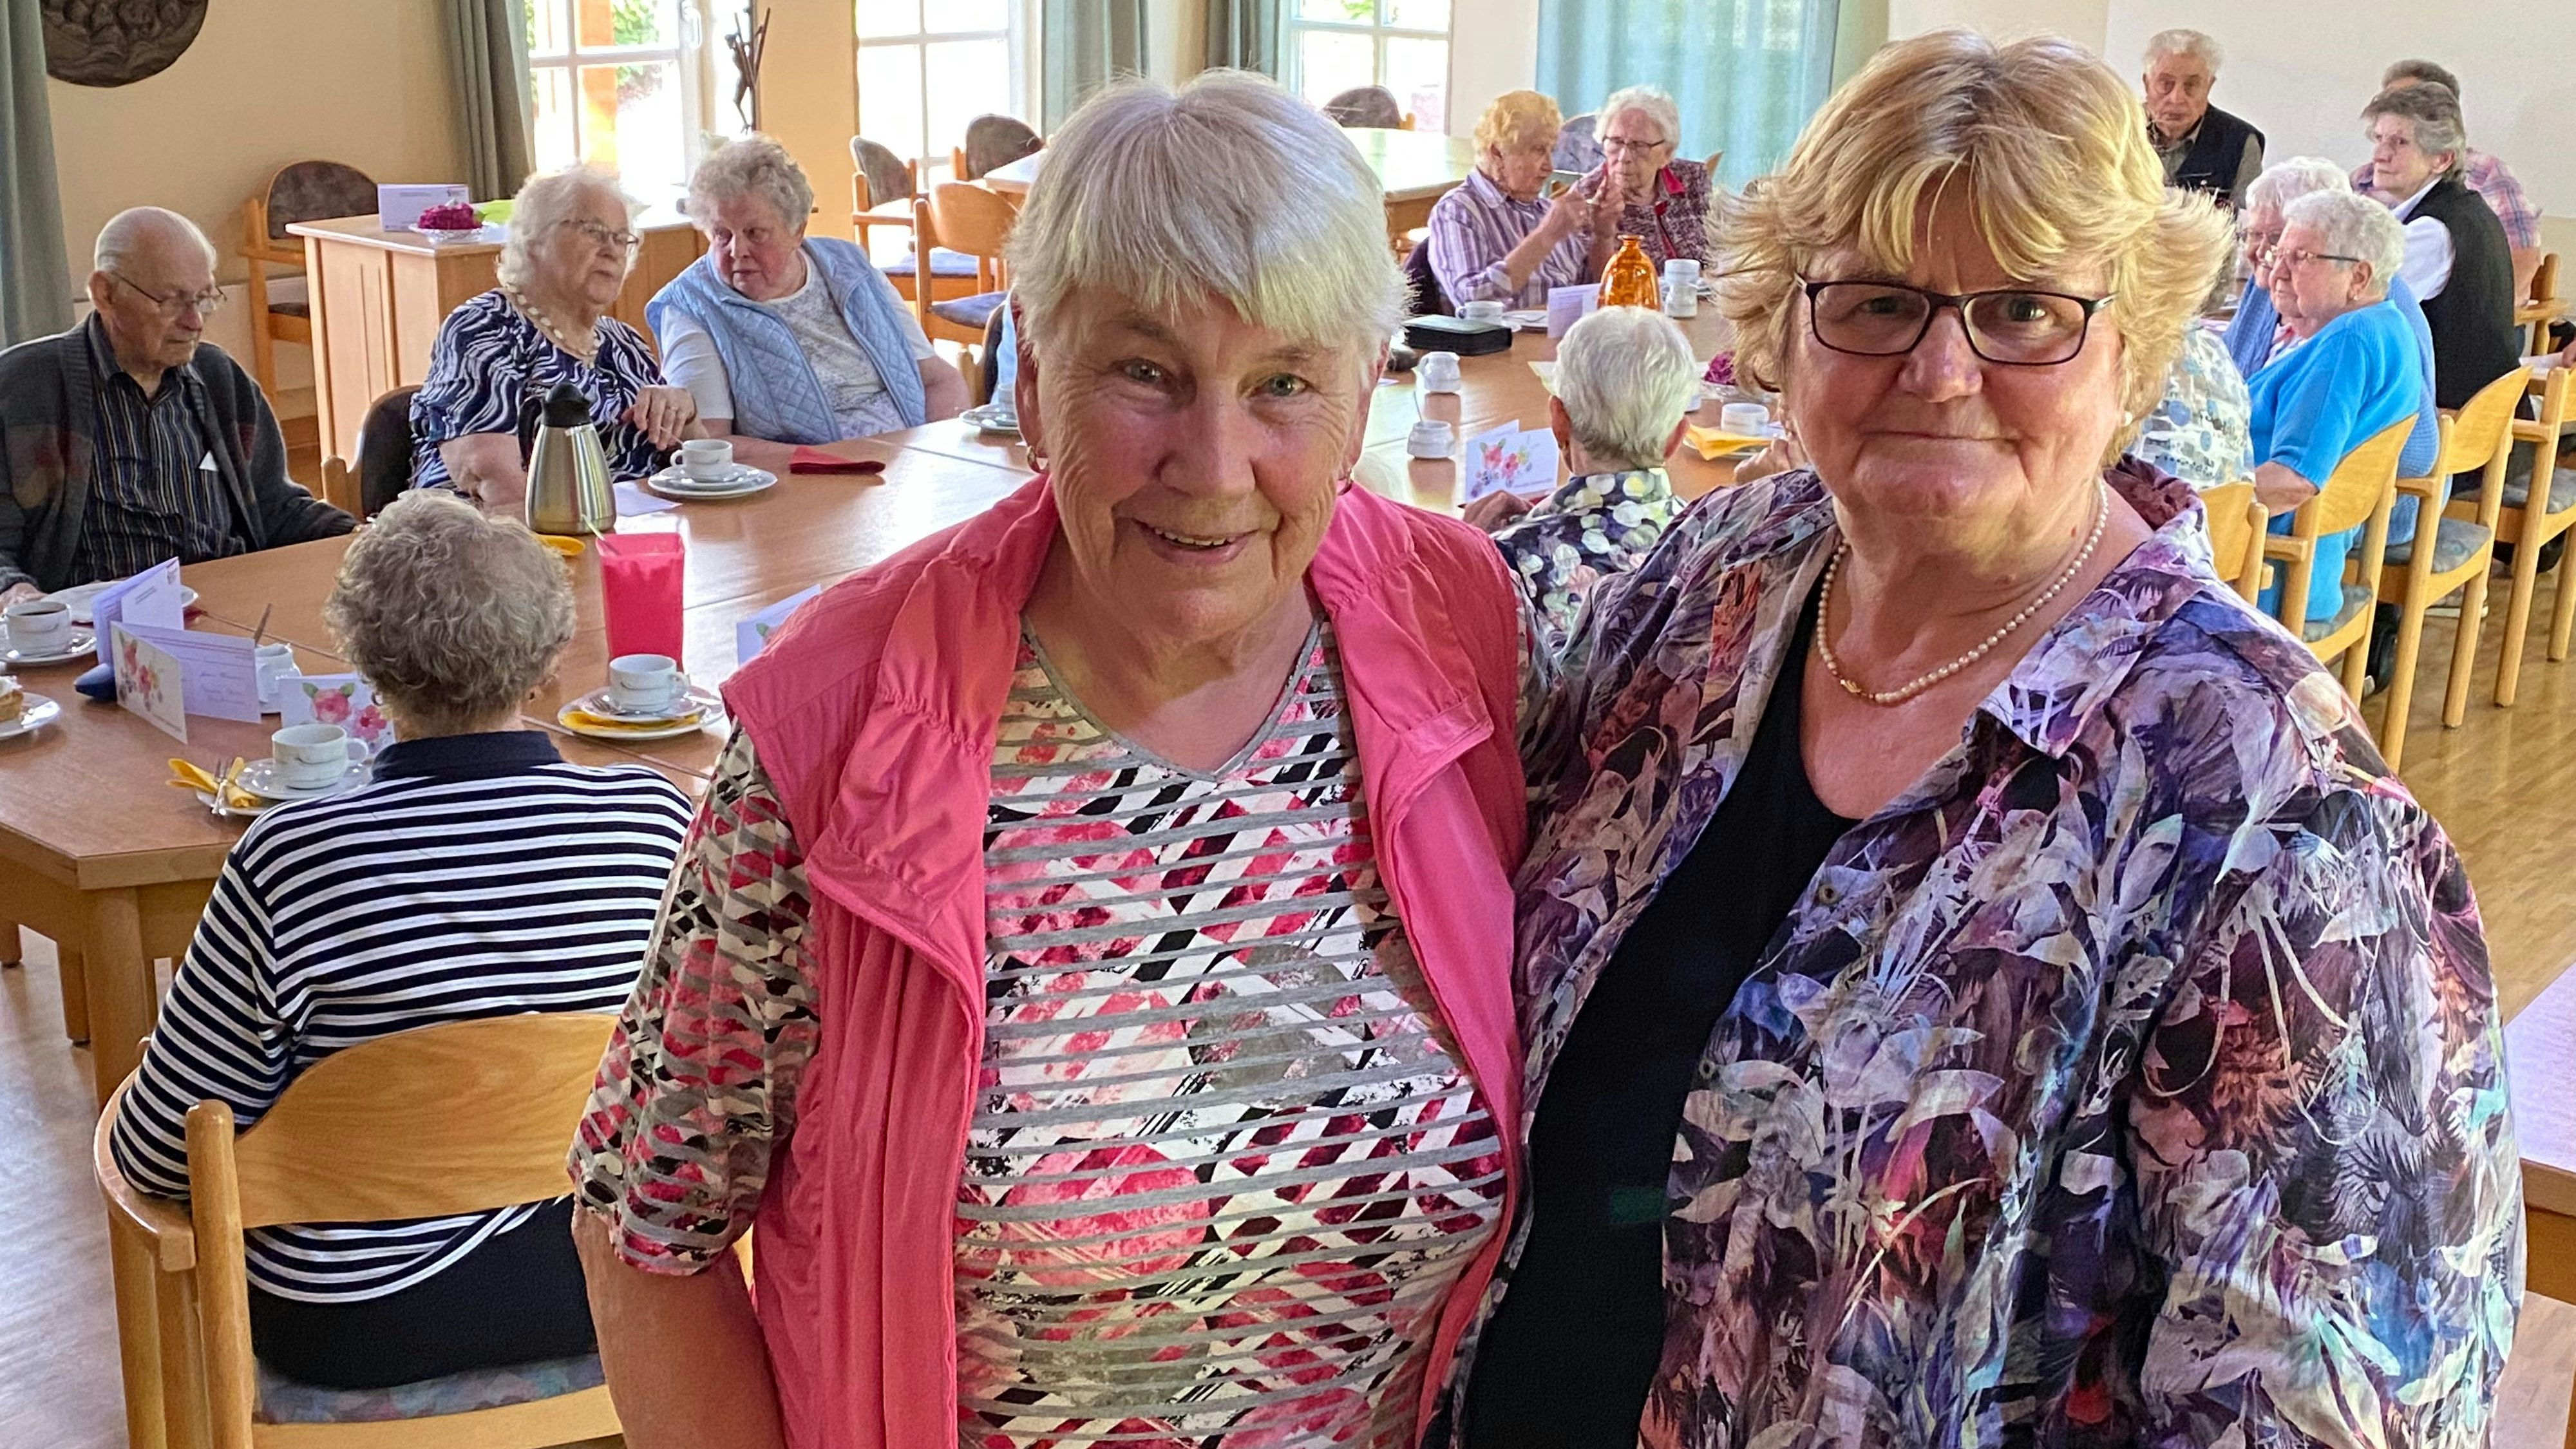 Stabwechsel: Maria Hömmen (links) gibt nach 30 Jahren die Leitung der Altenoyther Seniorengemeinschaft an Gerda Elsen-Dieckmann ab. Foto: Claudia Wimberg